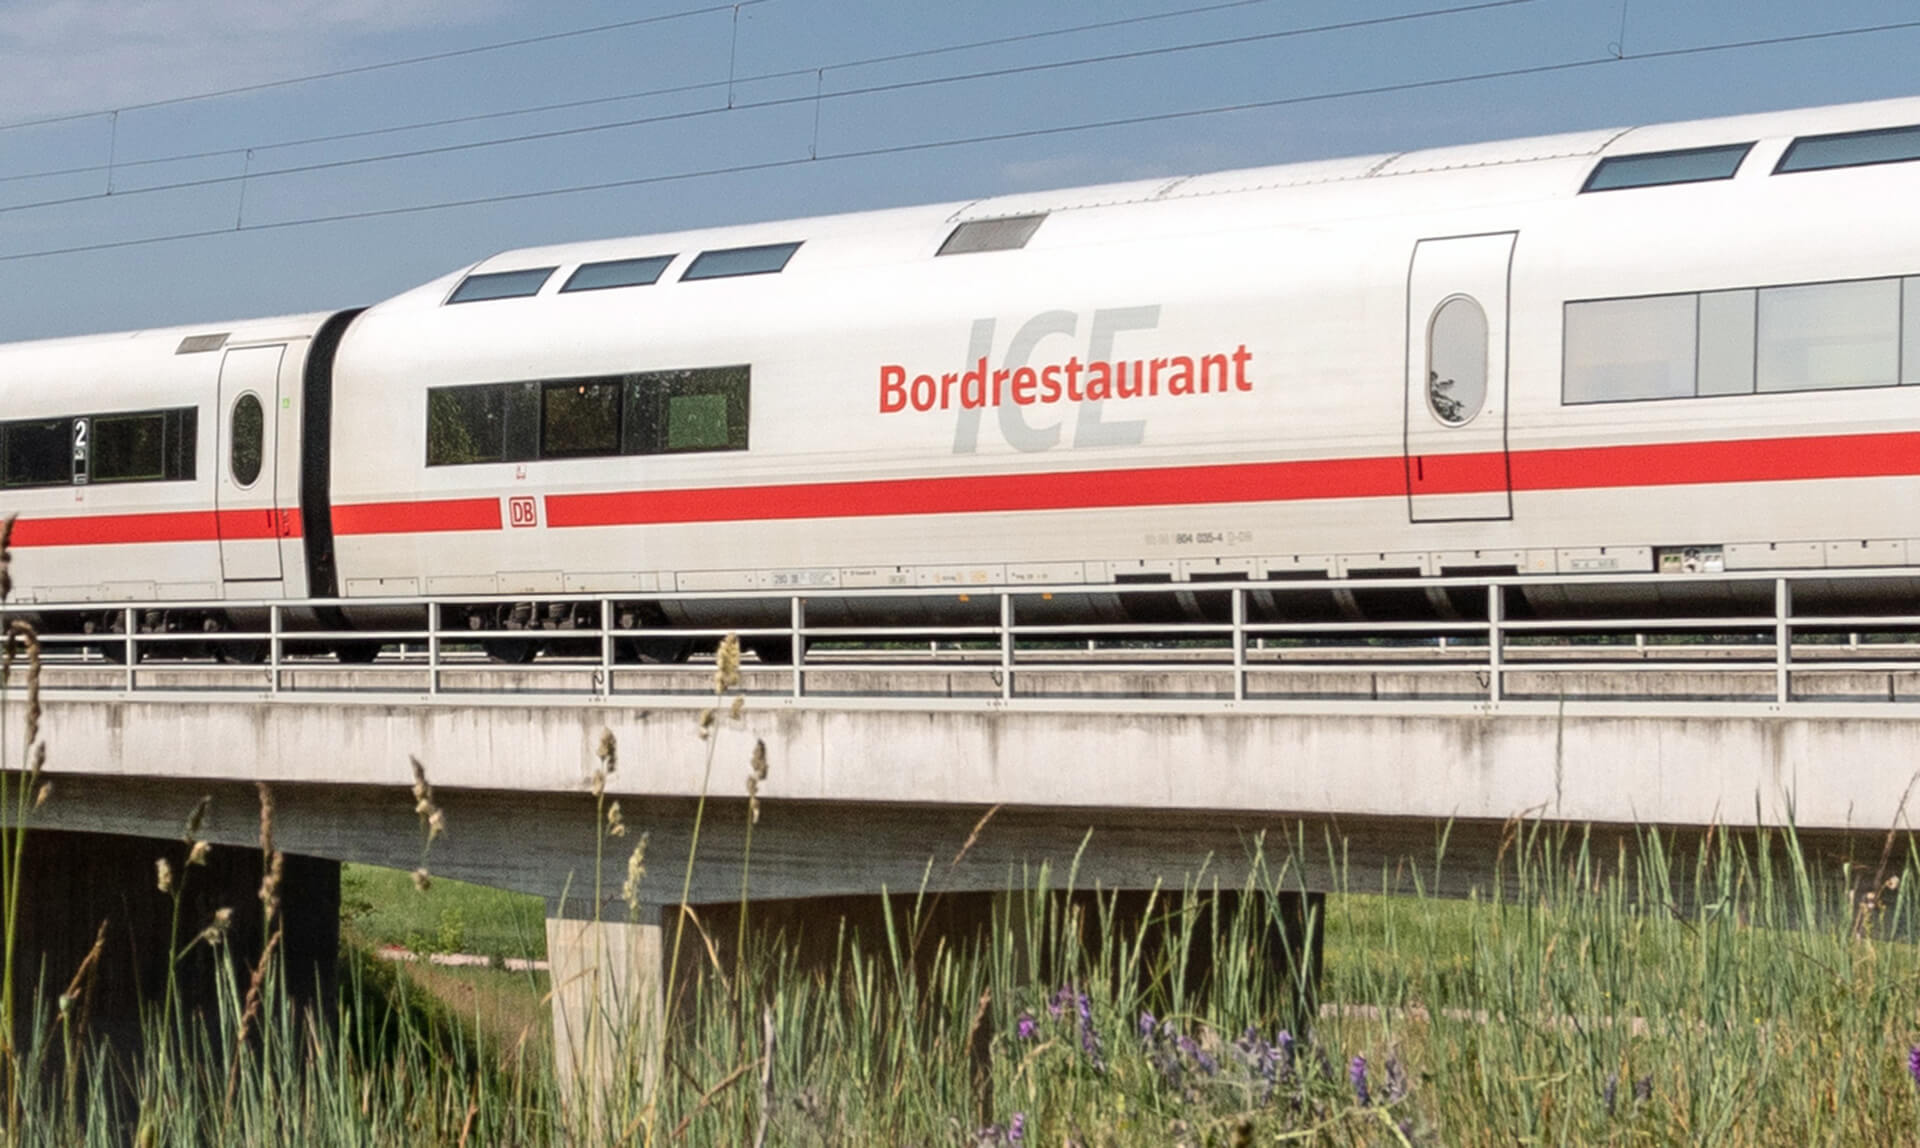 DB Bordrestaurant - durchschnittlich mit 160 Stundenkilometern unterwegs